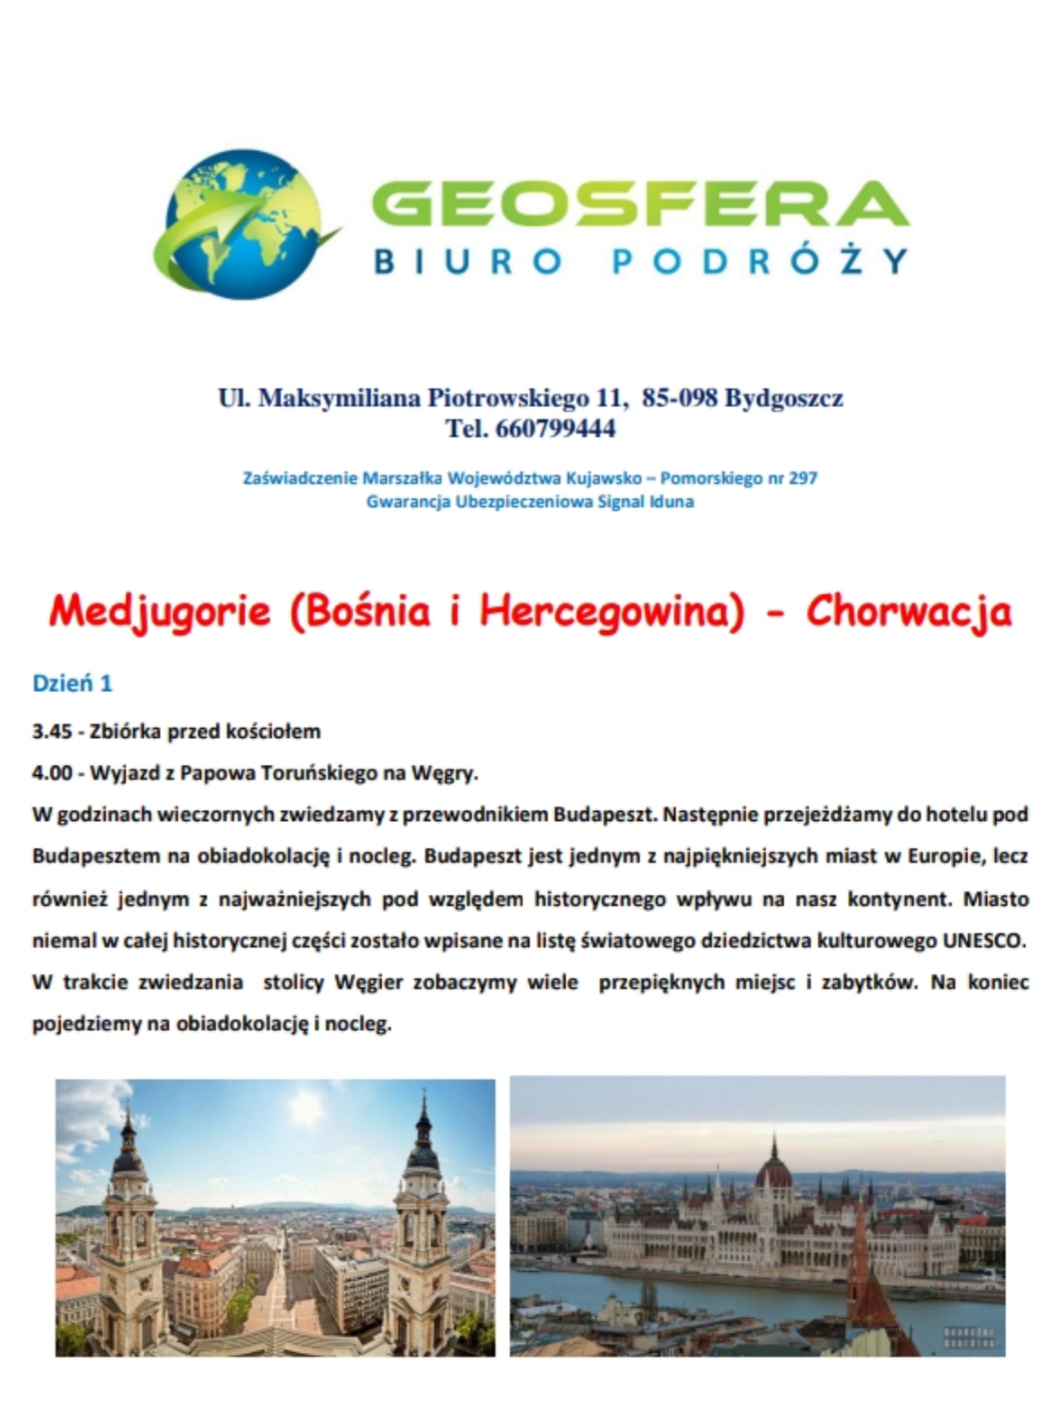 Pielgrzymko-wycieczka do Mediugorie (3-10.10.2020)